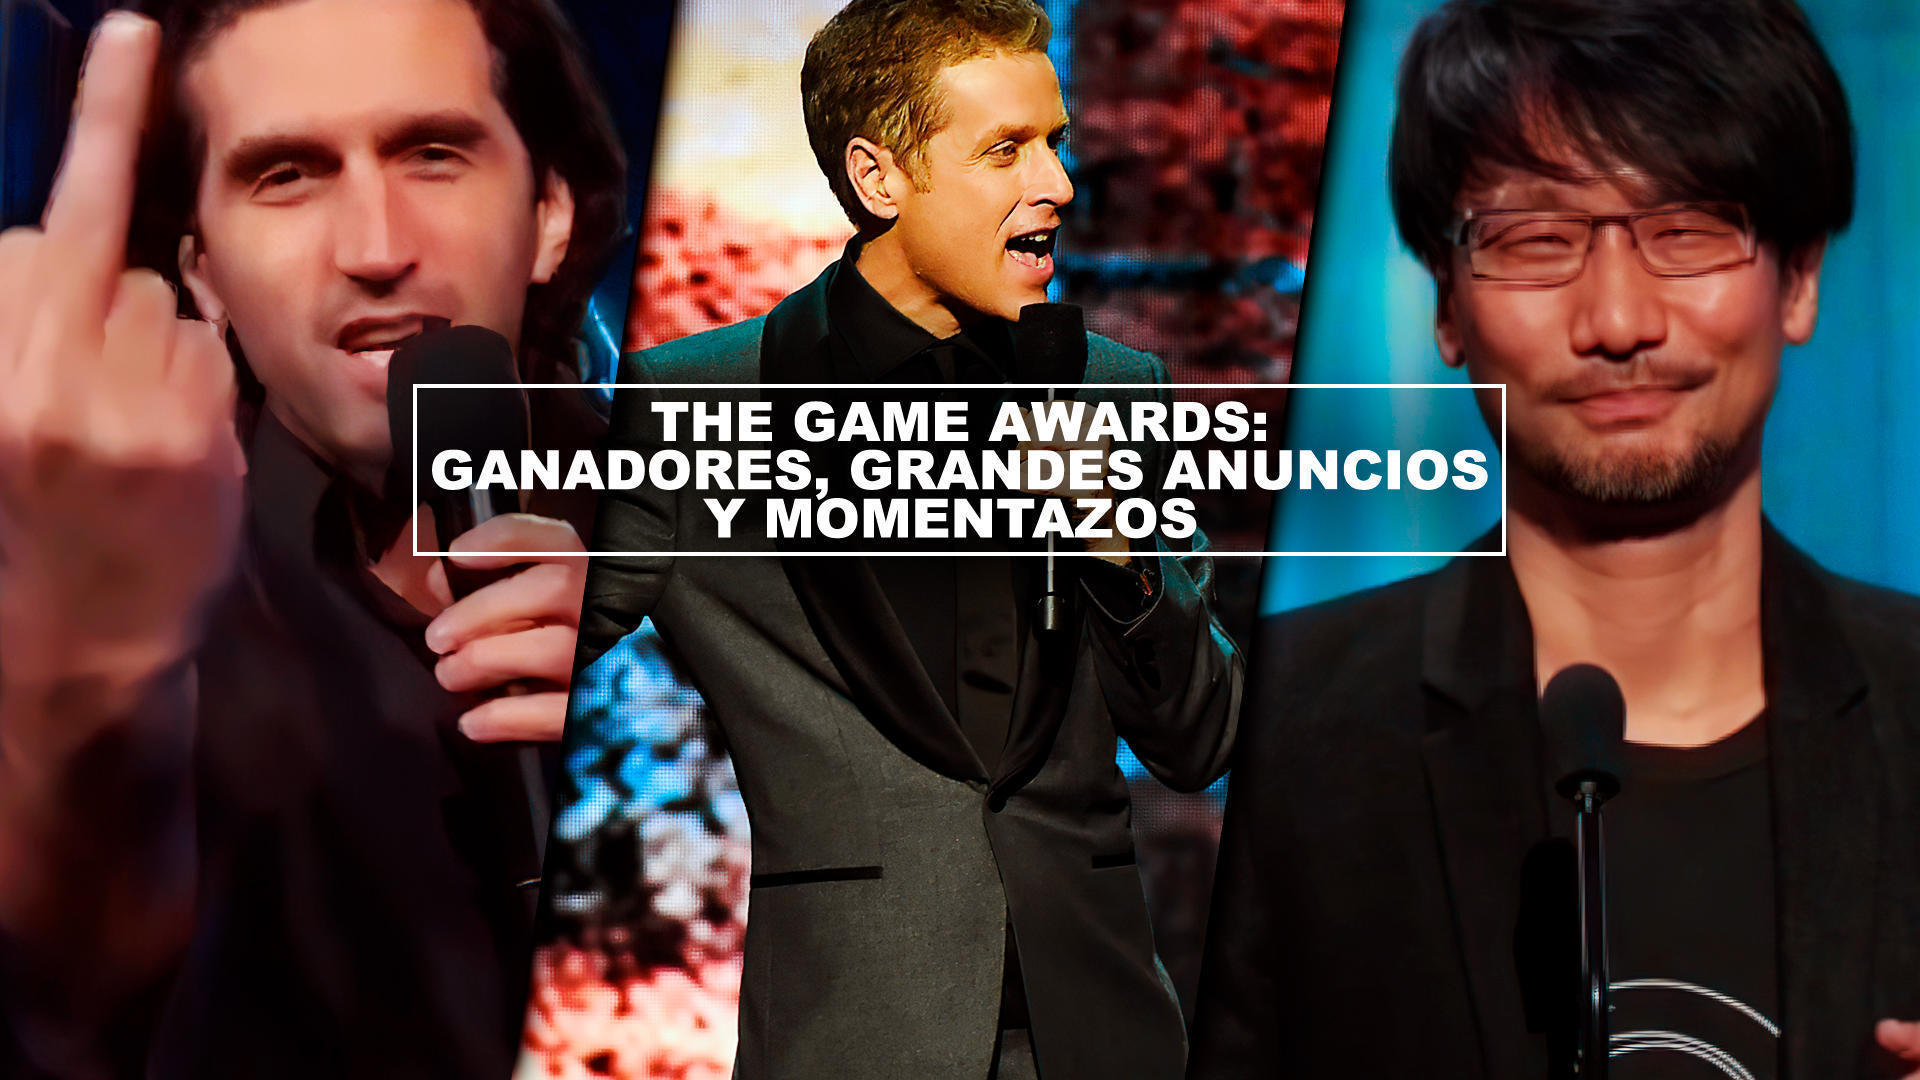 The Game Awards: Ganadores, grandes anuncios y momentazos